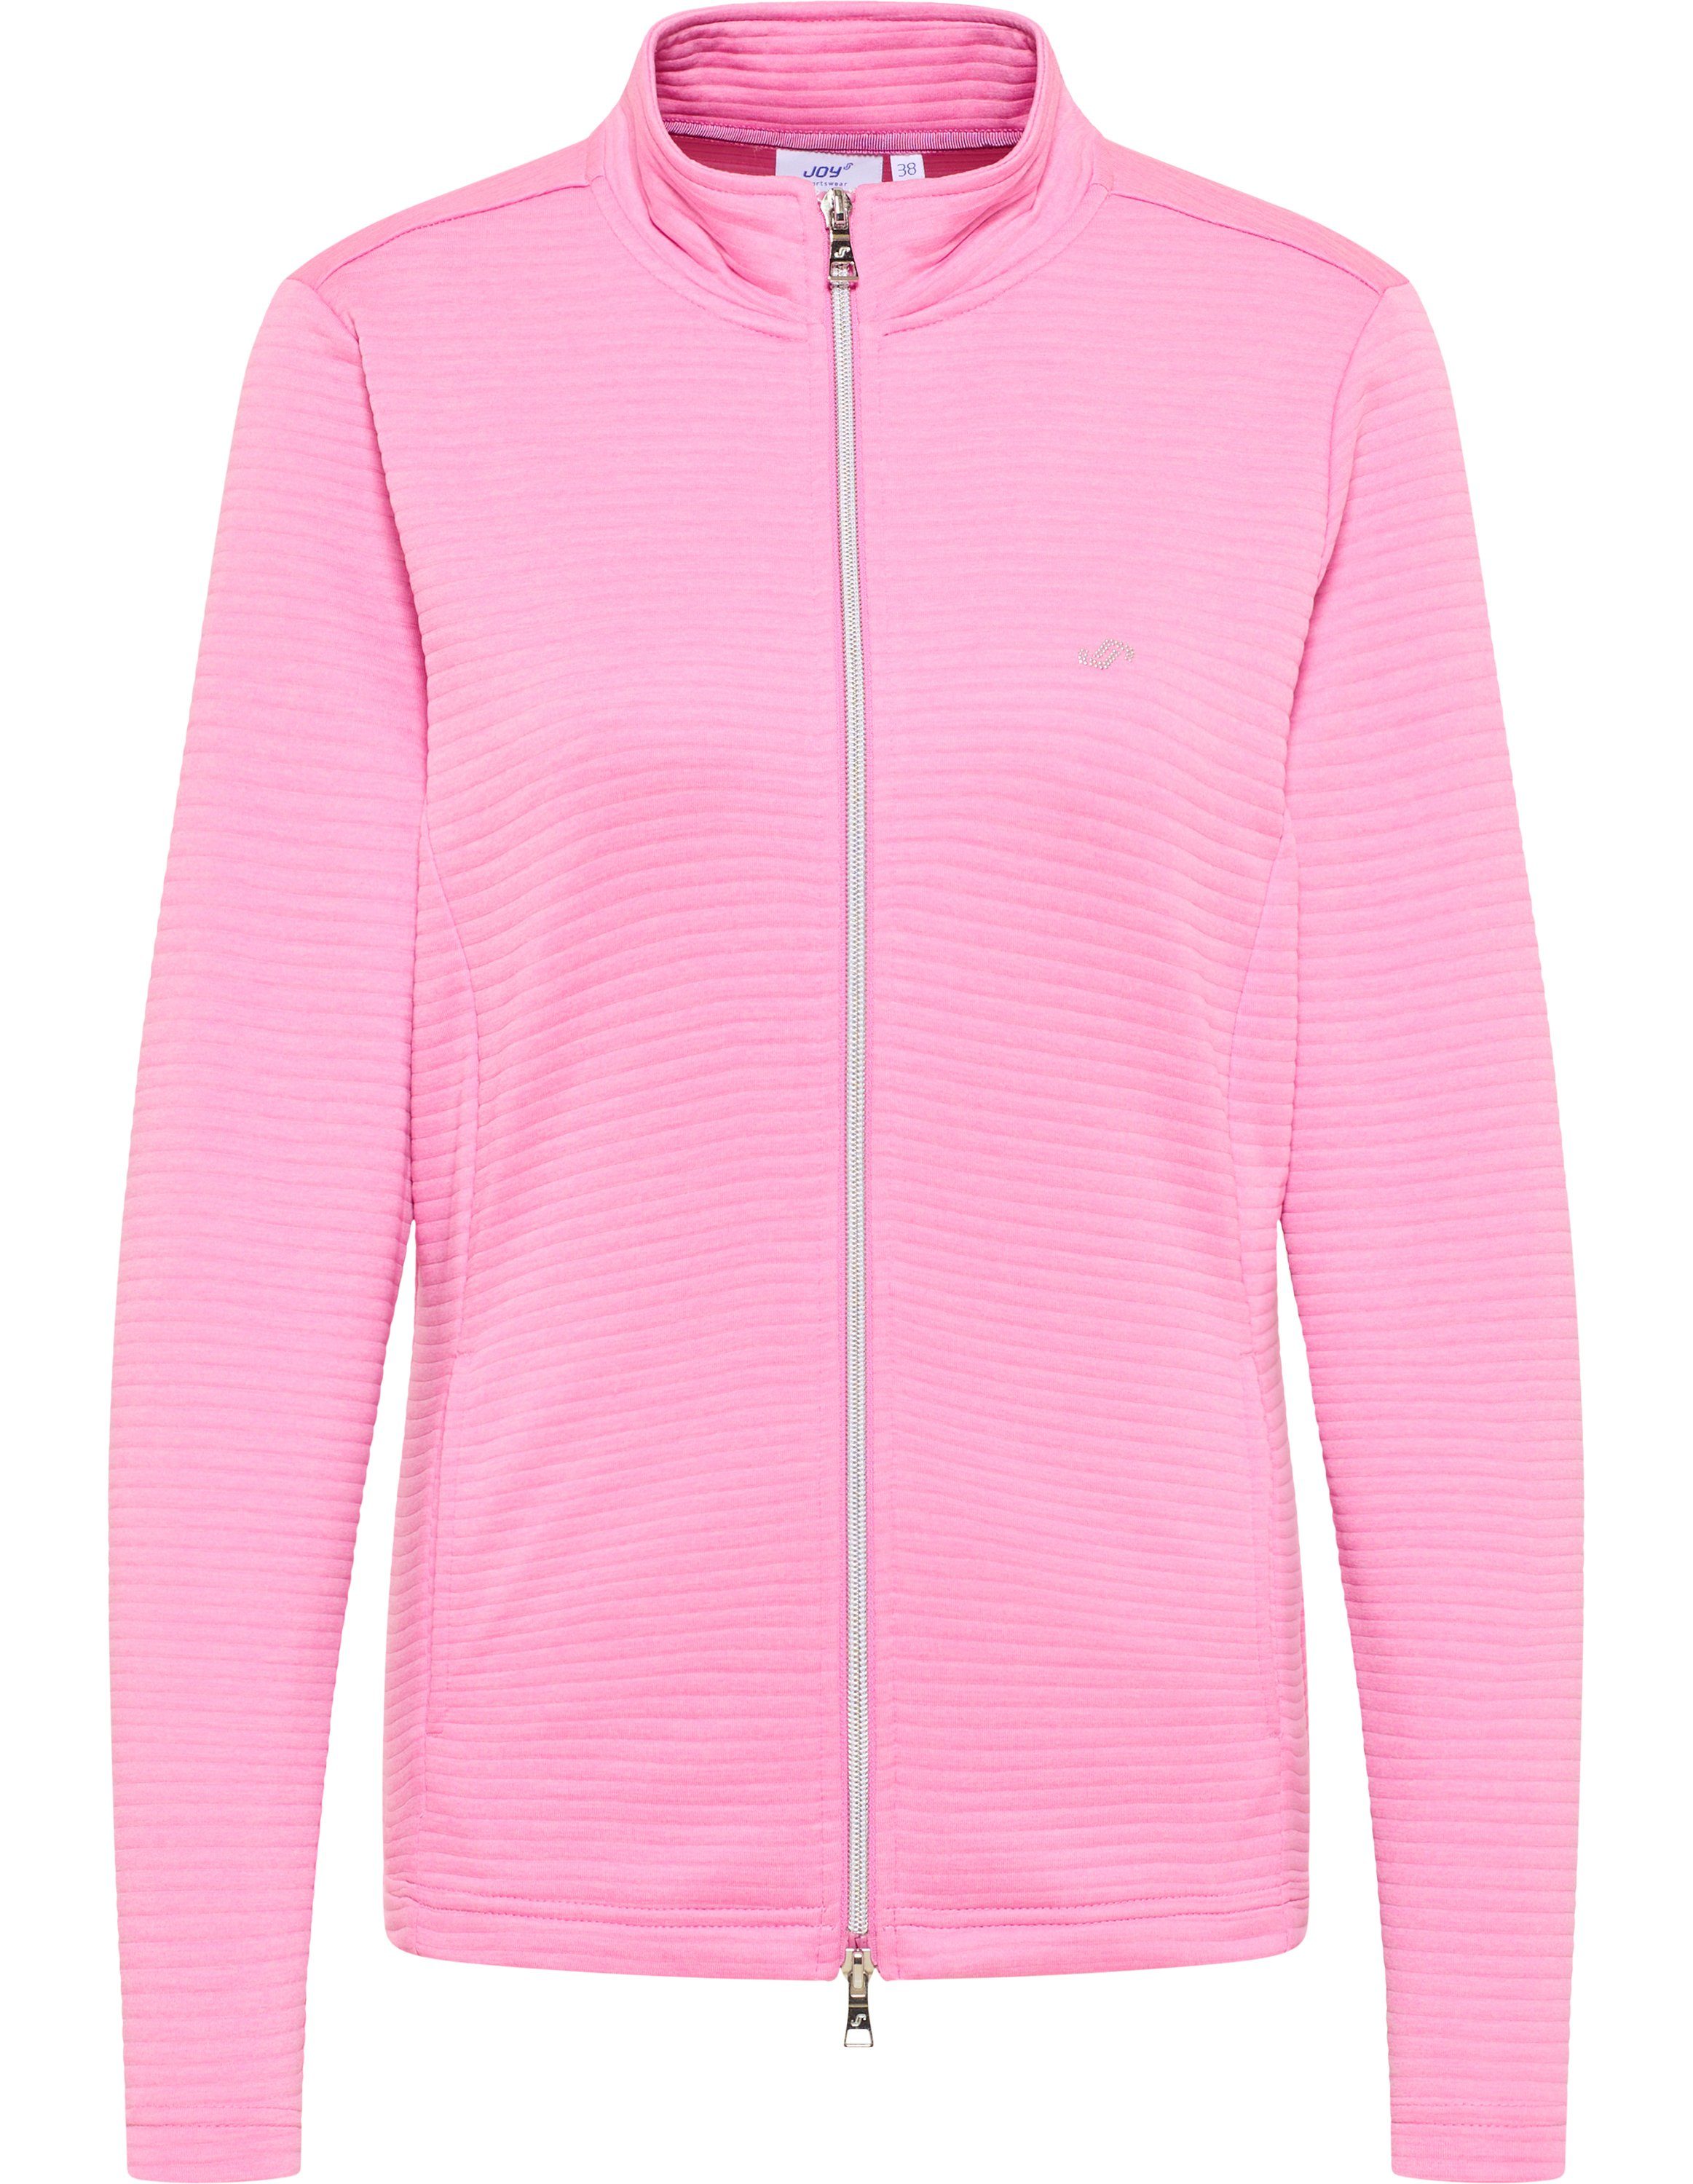 Sportswear cyclam PEGGY Trainingsjacke Jacke pink melange Joy